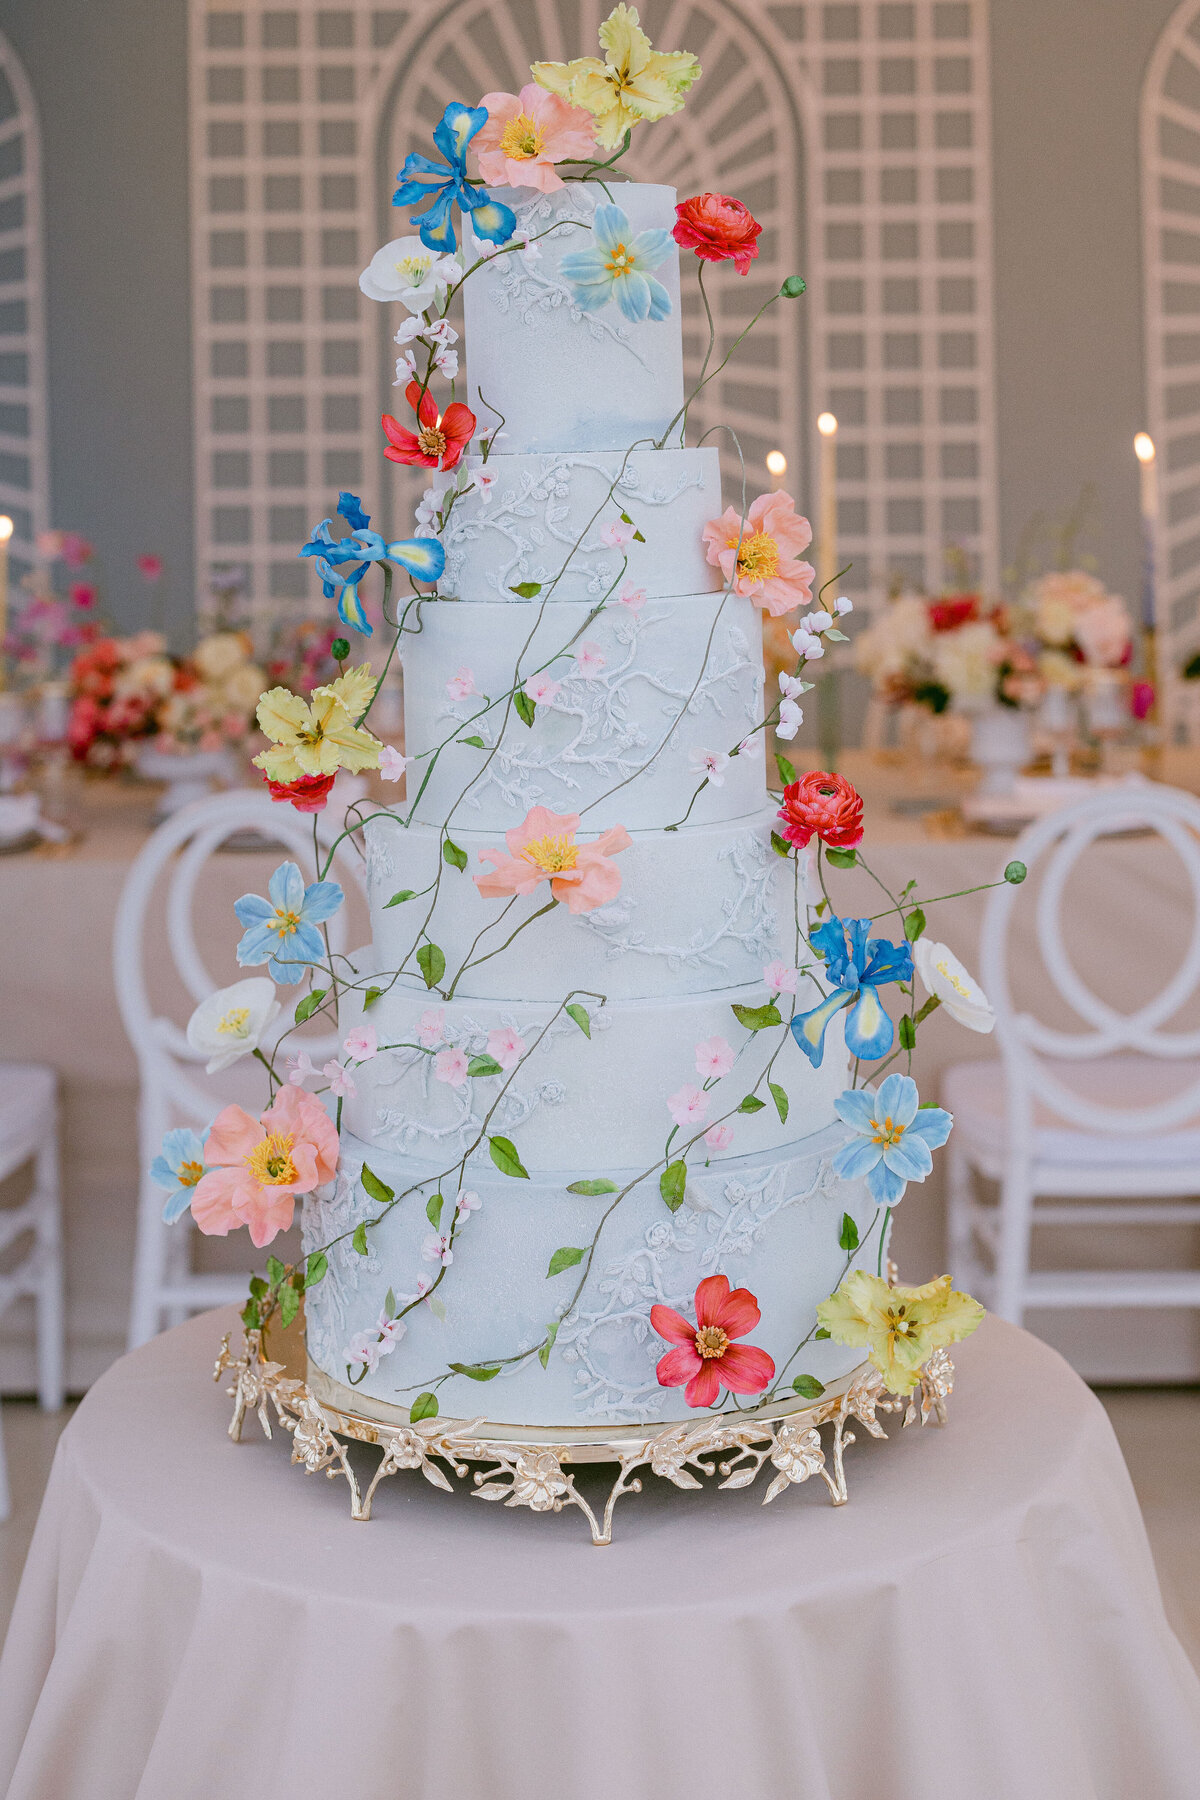 Elegant and floral wedding cake inspiration